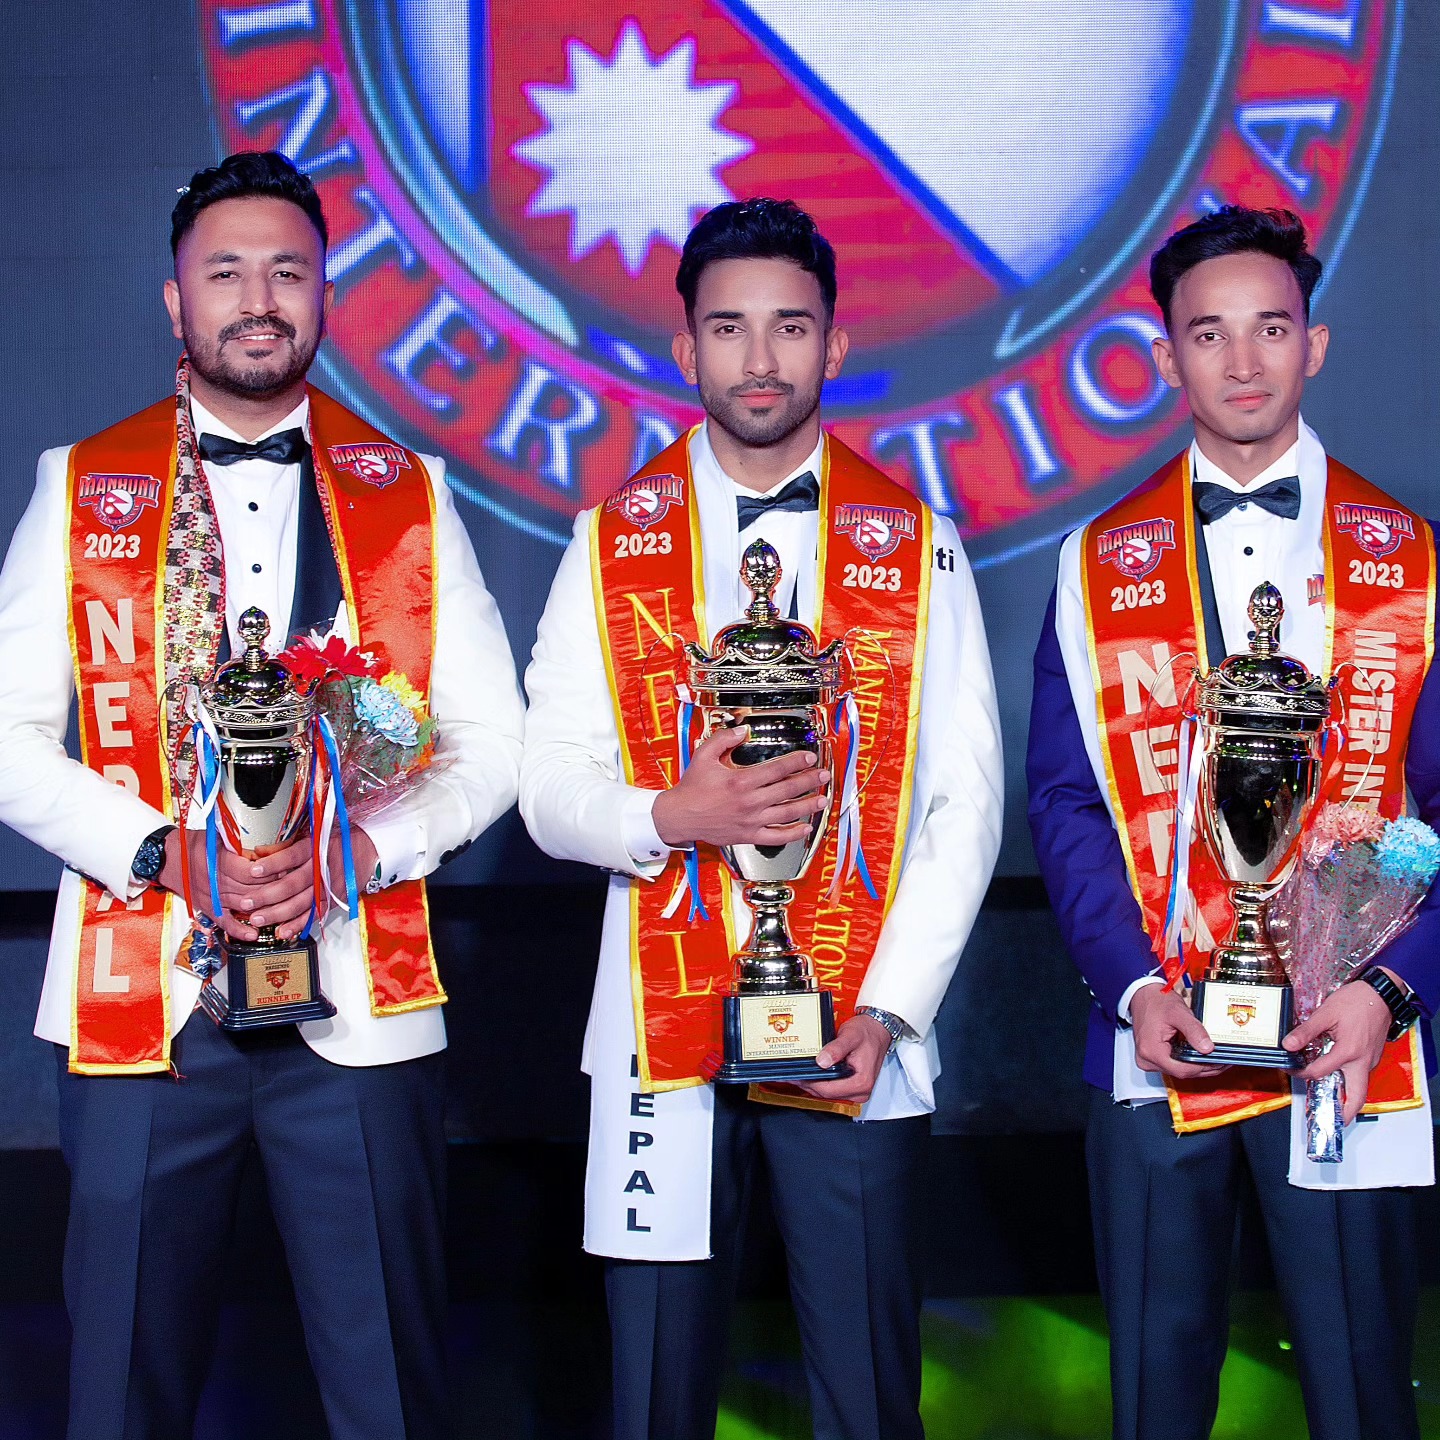 म्यानहन्ट इन्टरनेशनल नेपाल २०२४ को विजेता बने अभिनव थापा